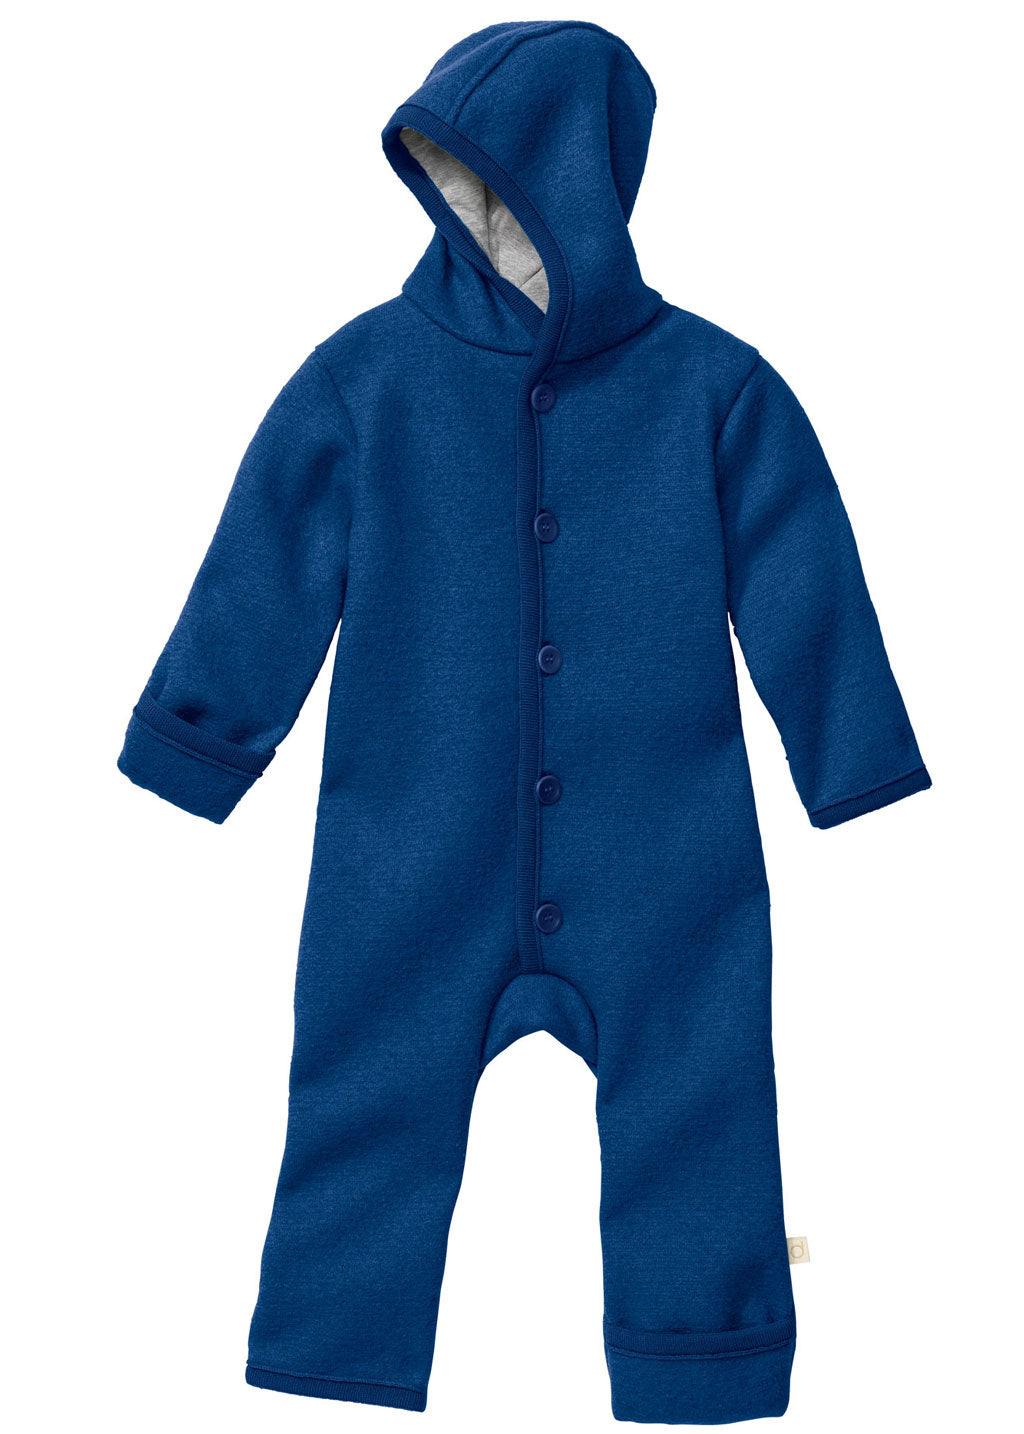 Tutone in lana cotta bio con cappuccio (0-12 mesi) // Blu navy